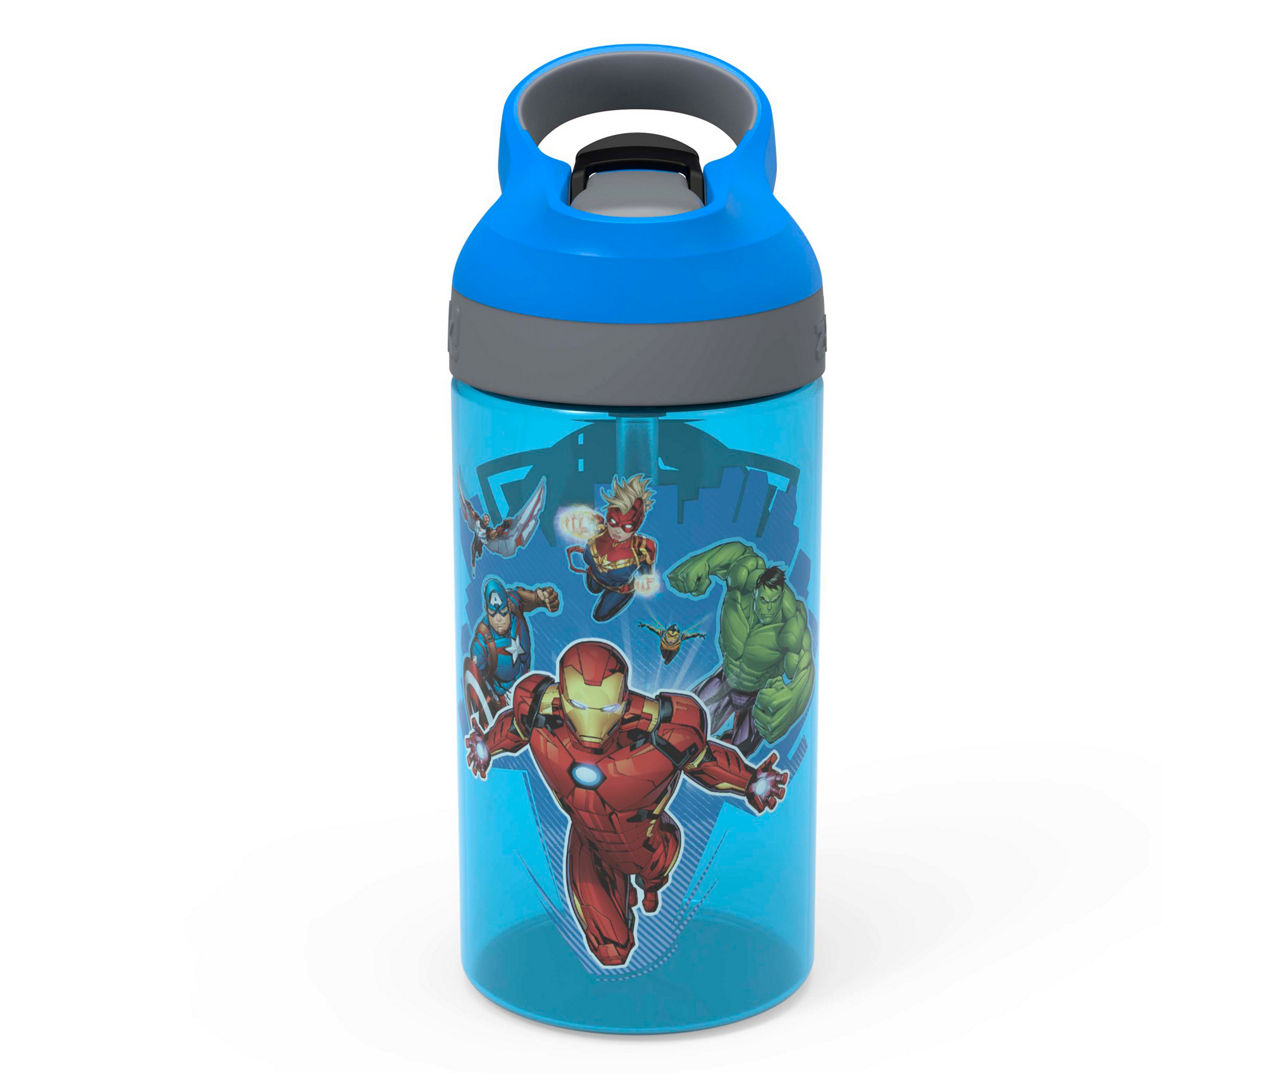 Avengers Atlantic Blue Spout Water Bottle, 16 oz.